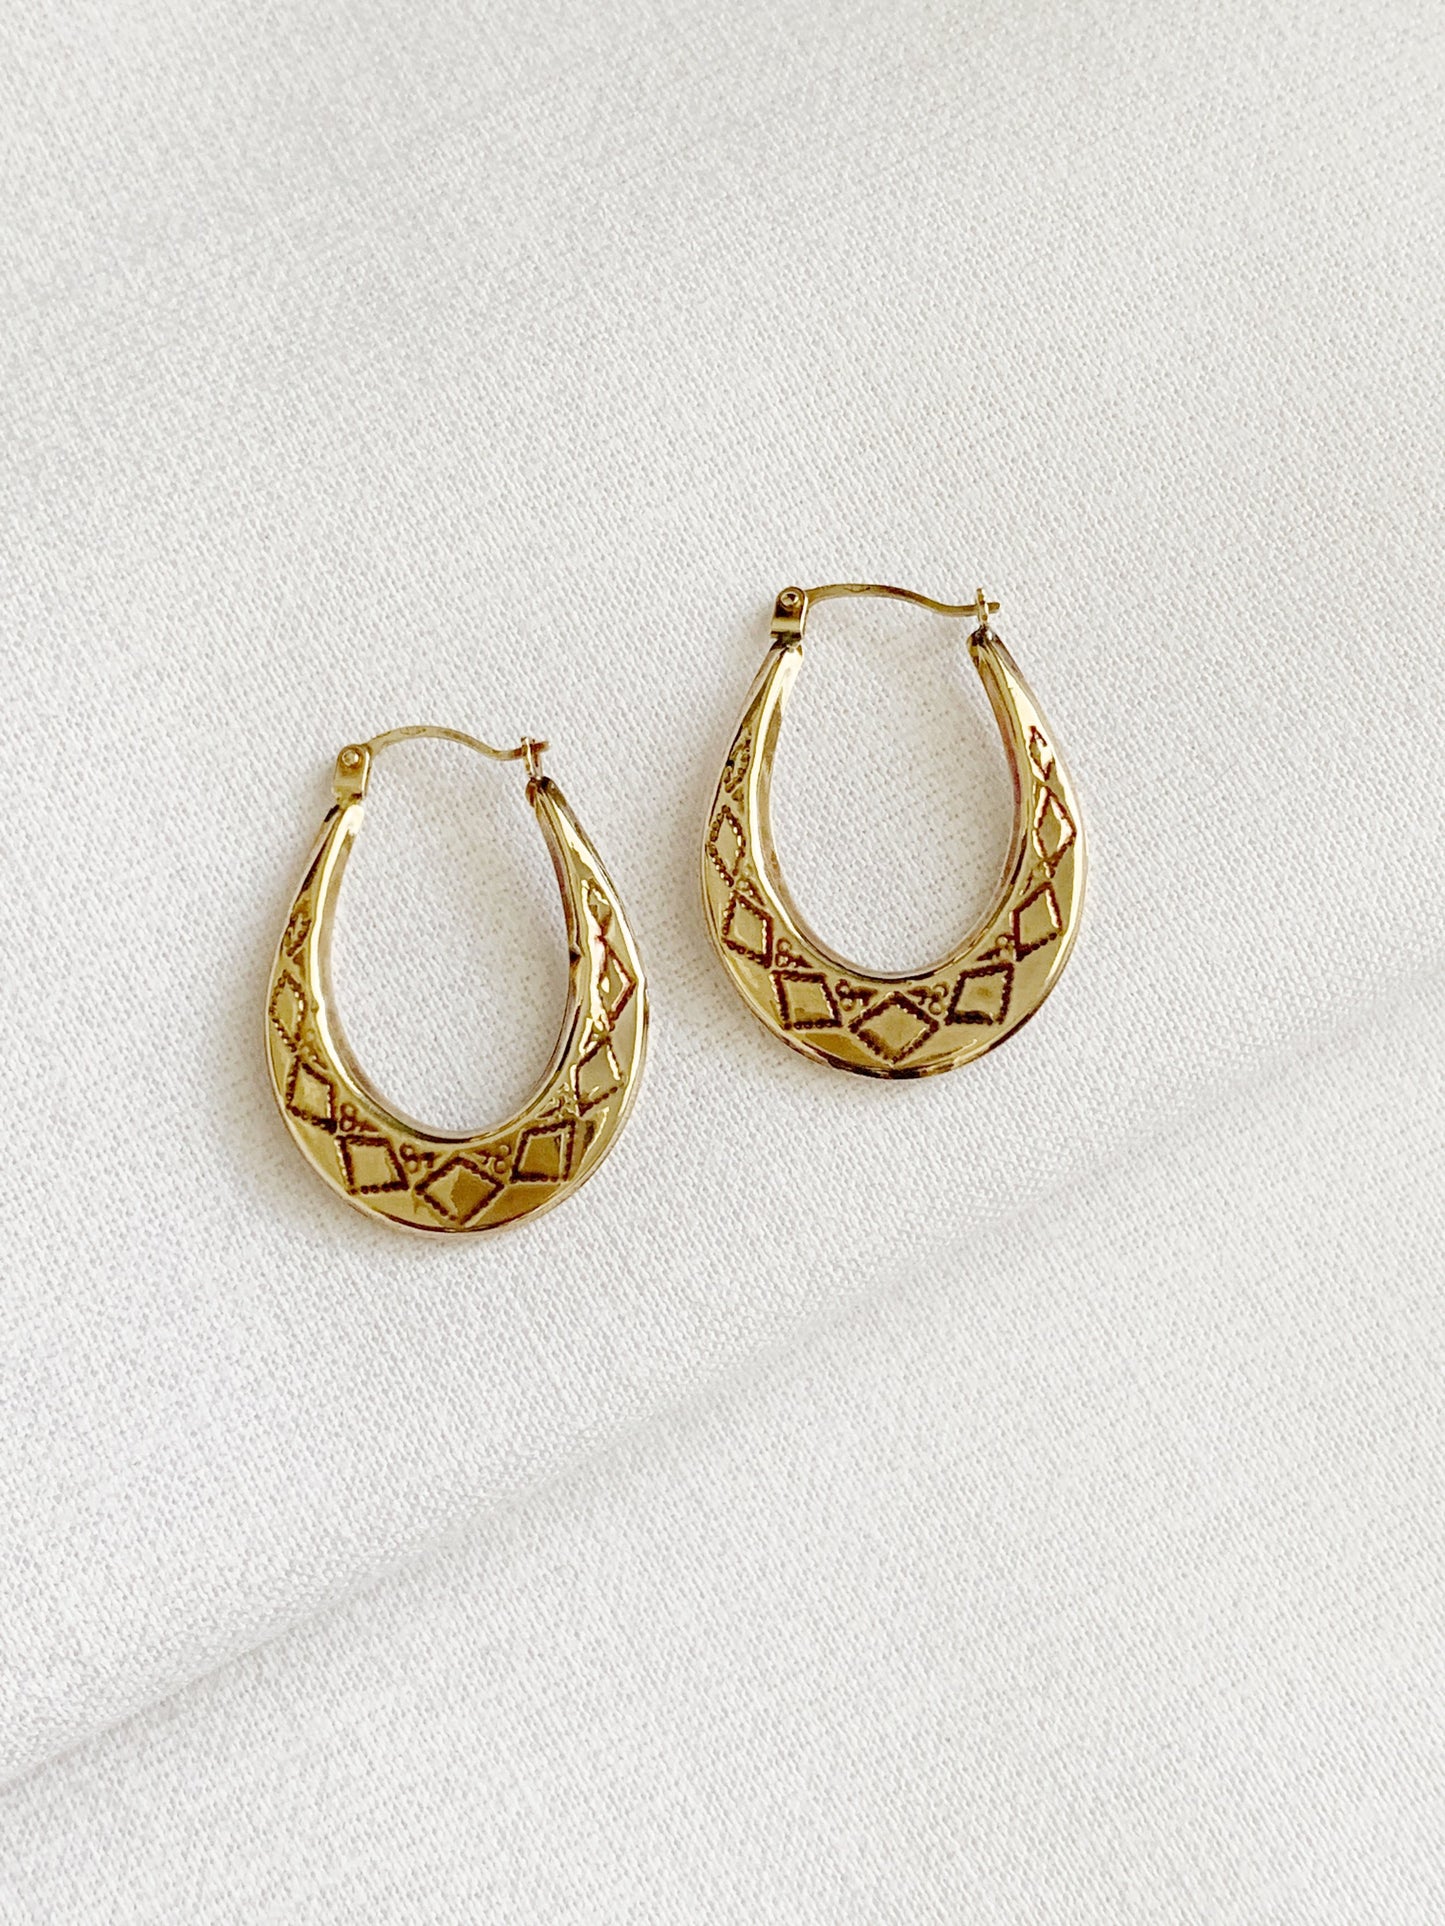 Vintage 9ct Gold Creole Boho Hoop Earrings